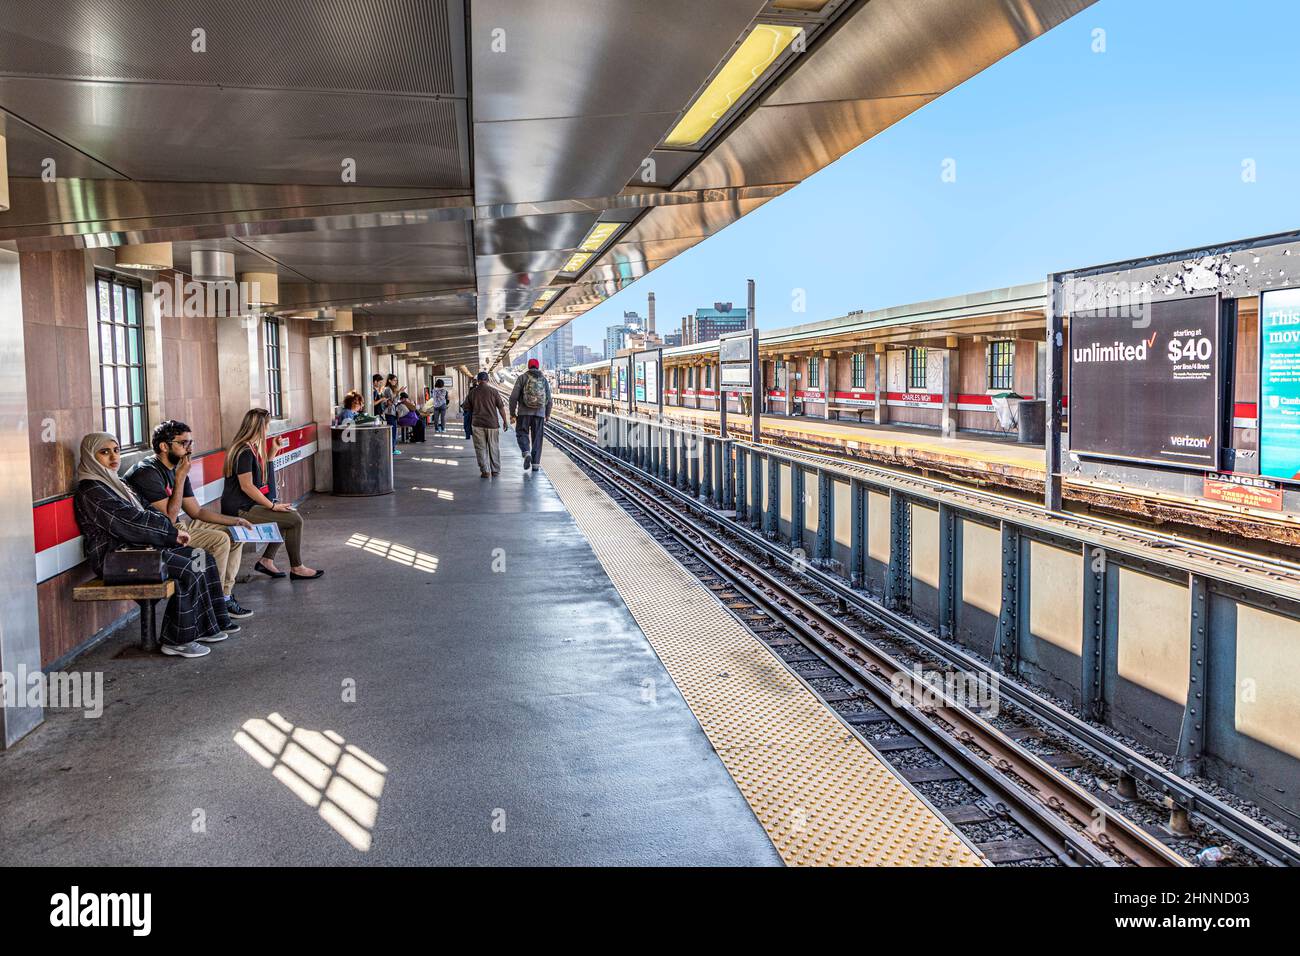 Les gens attendent le métro à Boston, aux États-Unis. La Metropolitan Massachusetts Bay Transportation Authority (MBTA) exploite des services de transport ferroviaire lourd, léger et par autobus dans la région métropolitaine de Boston Banque D'Images